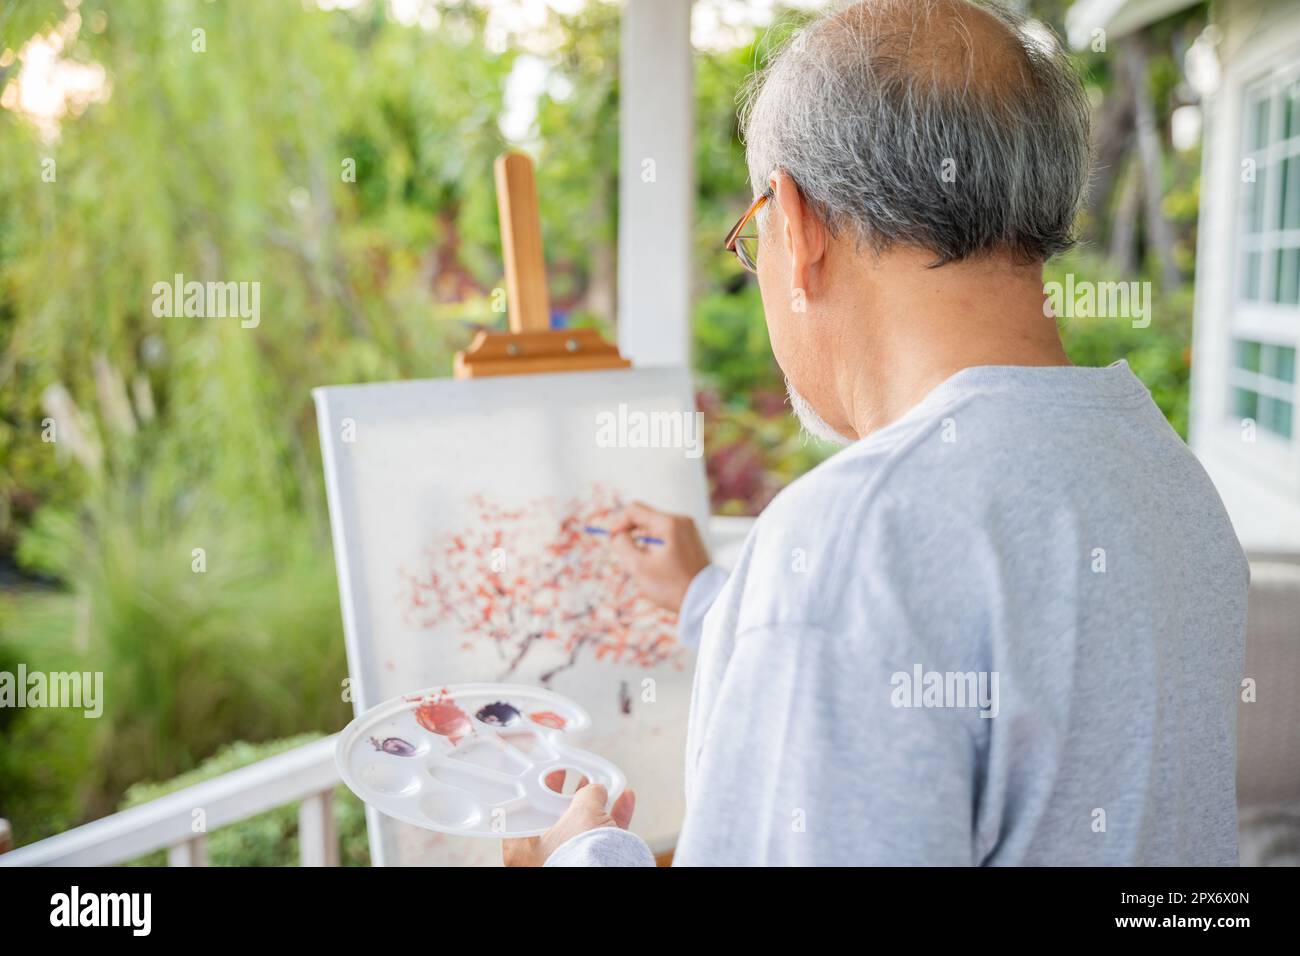 Lifestyle asiatischer Senioren, der Bilder mit Pinsel- und Ölfarben auf Leinwand malt, ältere Menschen lächeln an seiner Staffelei vor grünem Nat Stockfoto